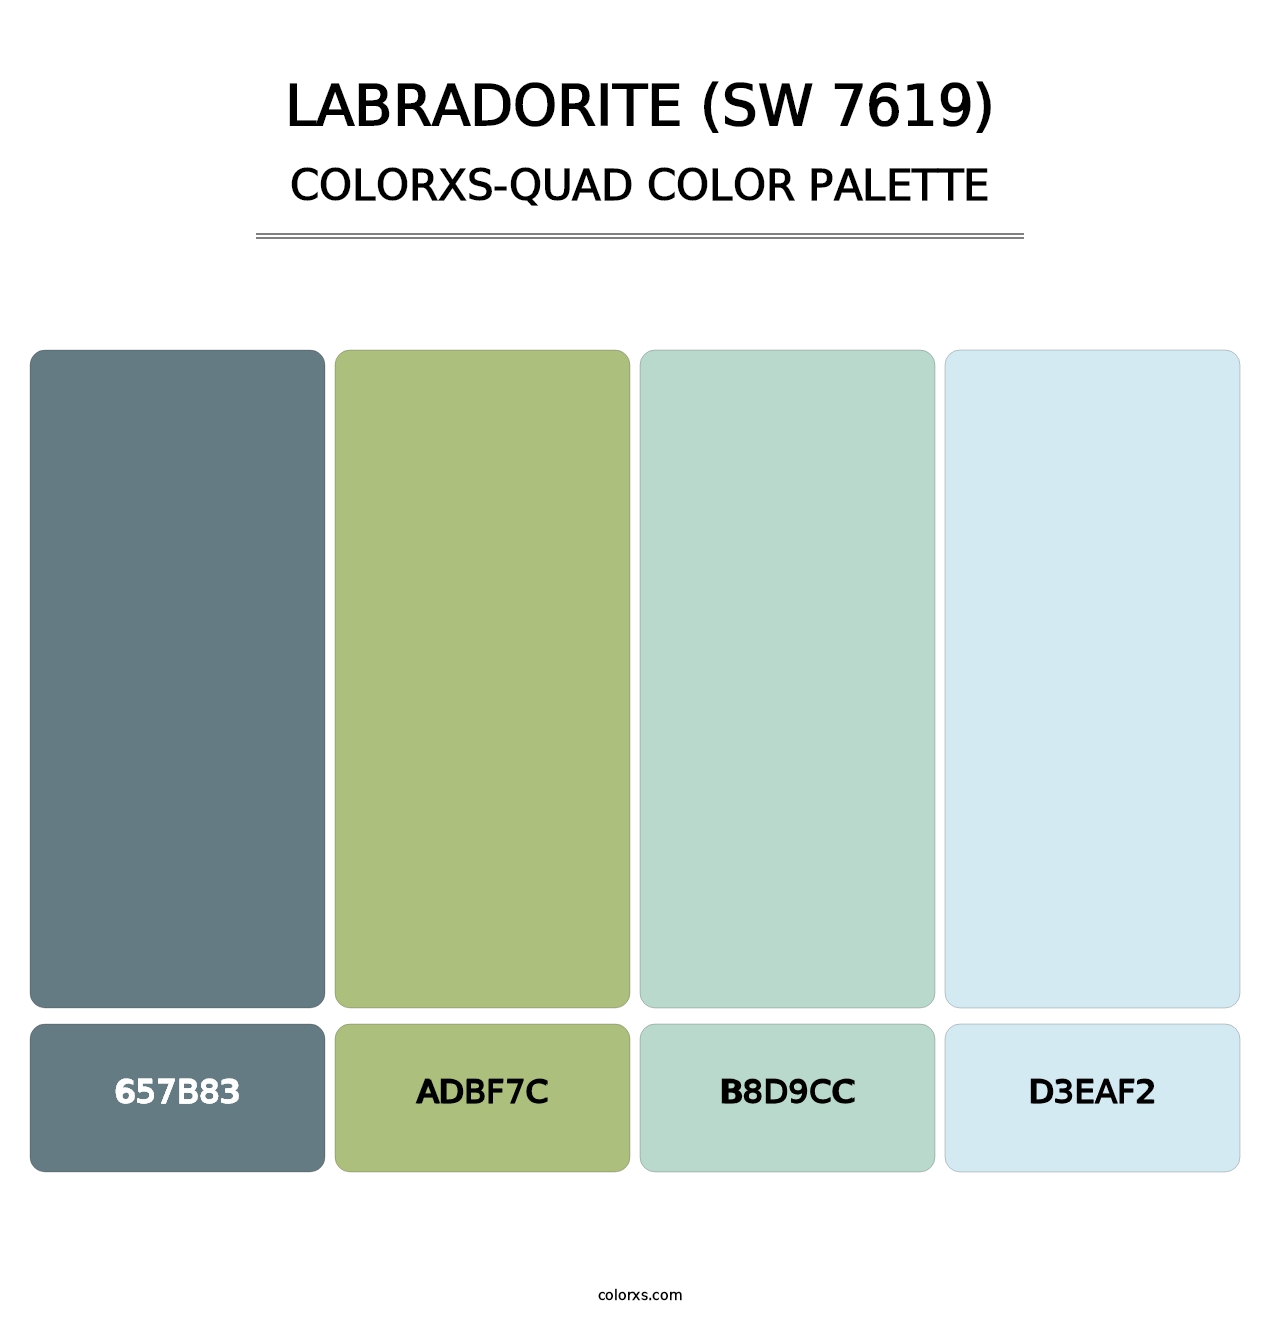 Labradorite (SW 7619) - Colorxs Quad Palette